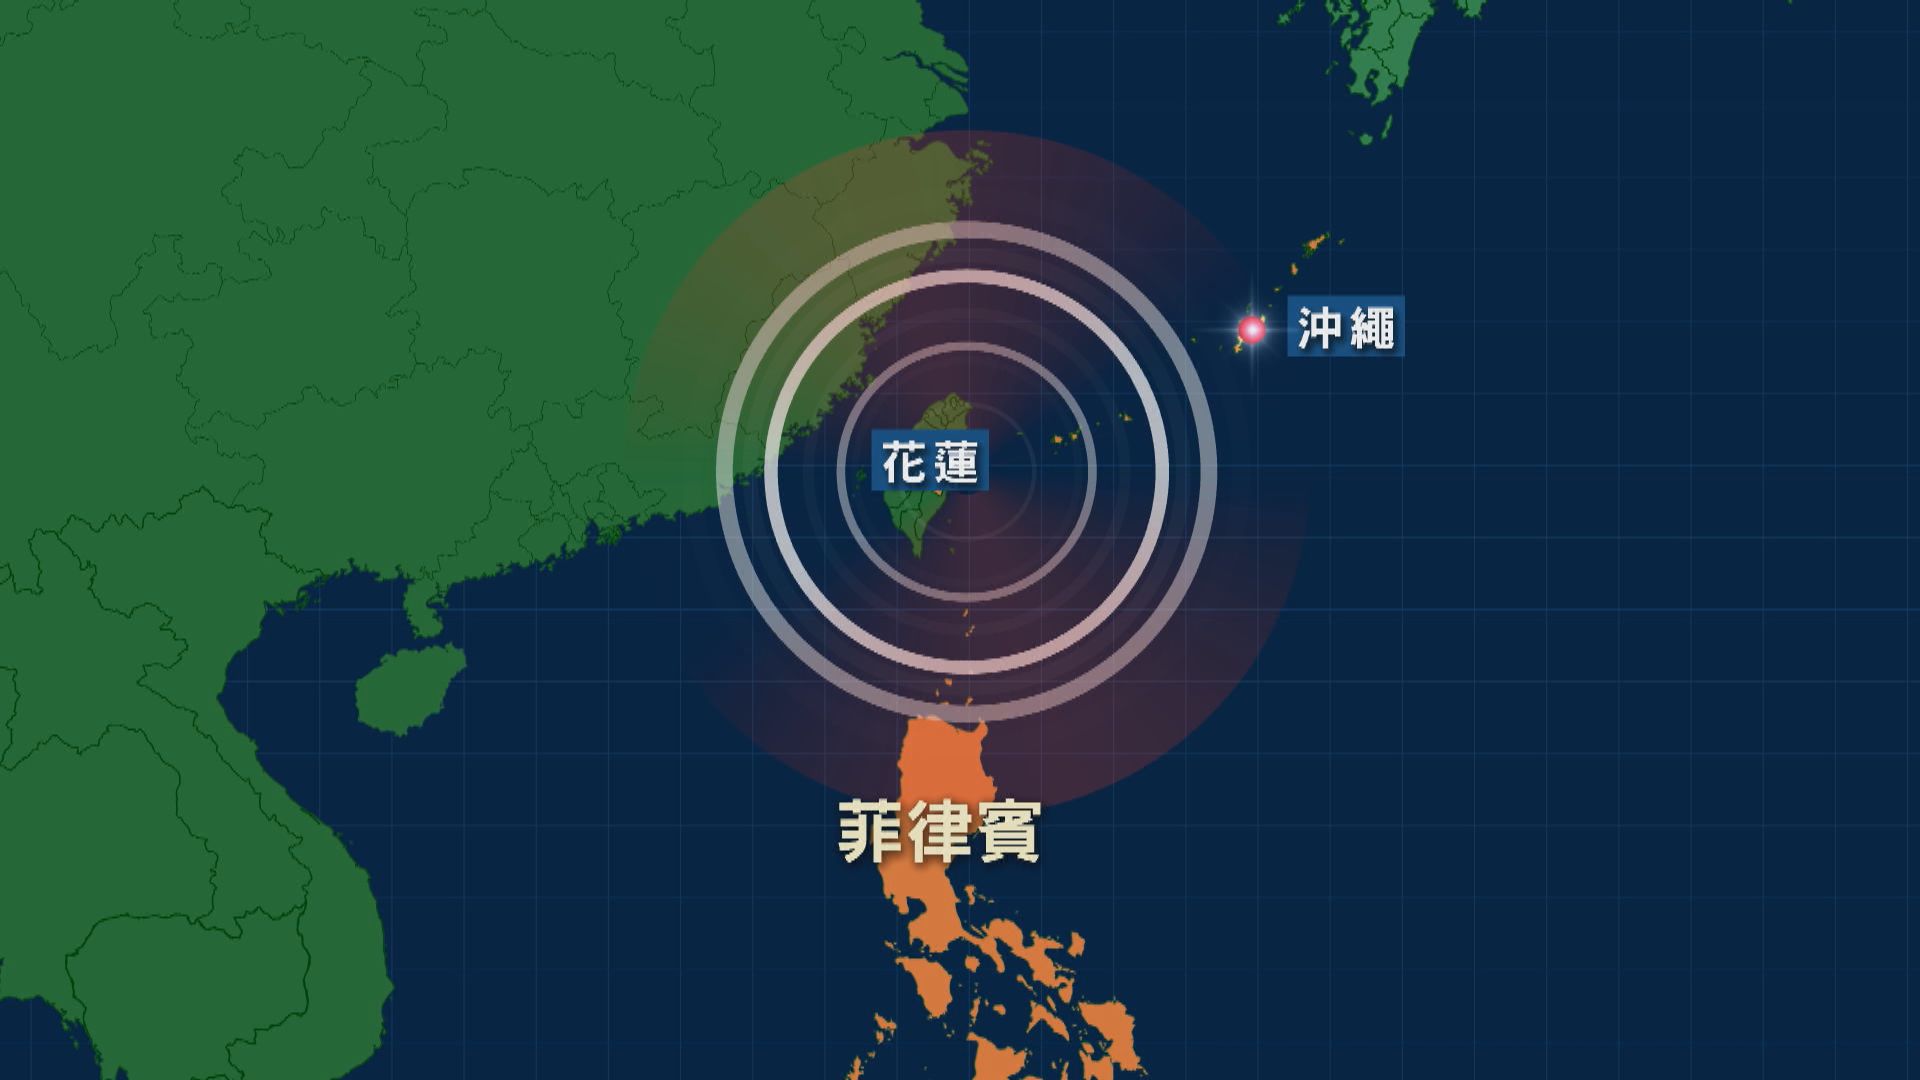 日本及菲律賓等地一度發海嘯警報 粵閩等沿海省市亦感受到震動